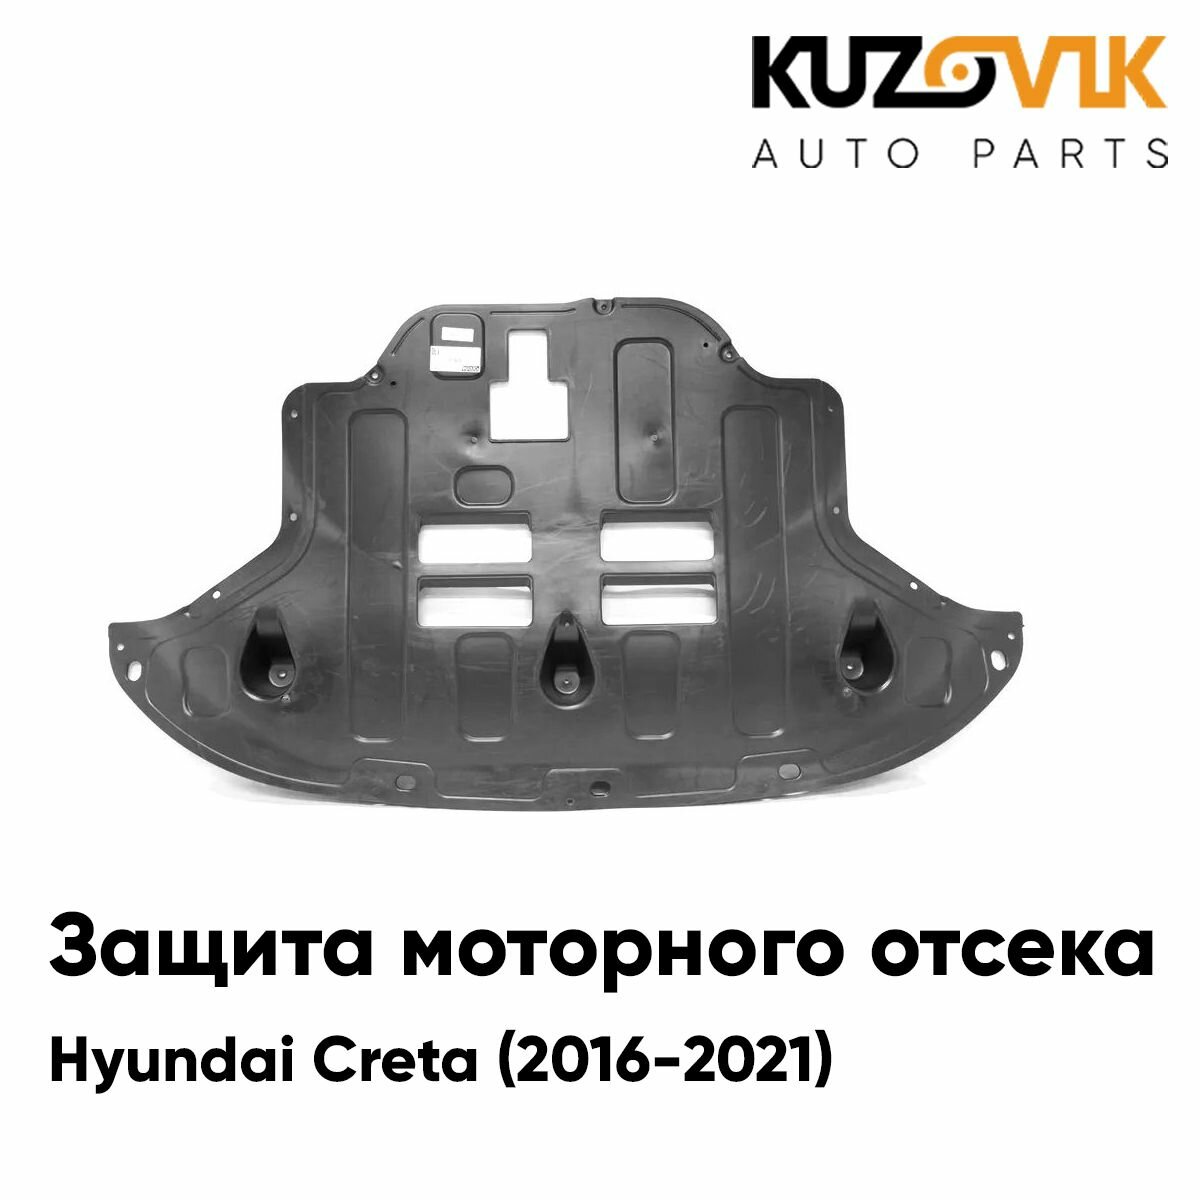 Пыльник защита моторного отсека двигателя Hyundai Creta Хендай Крета (2016-) накладка дефлектор